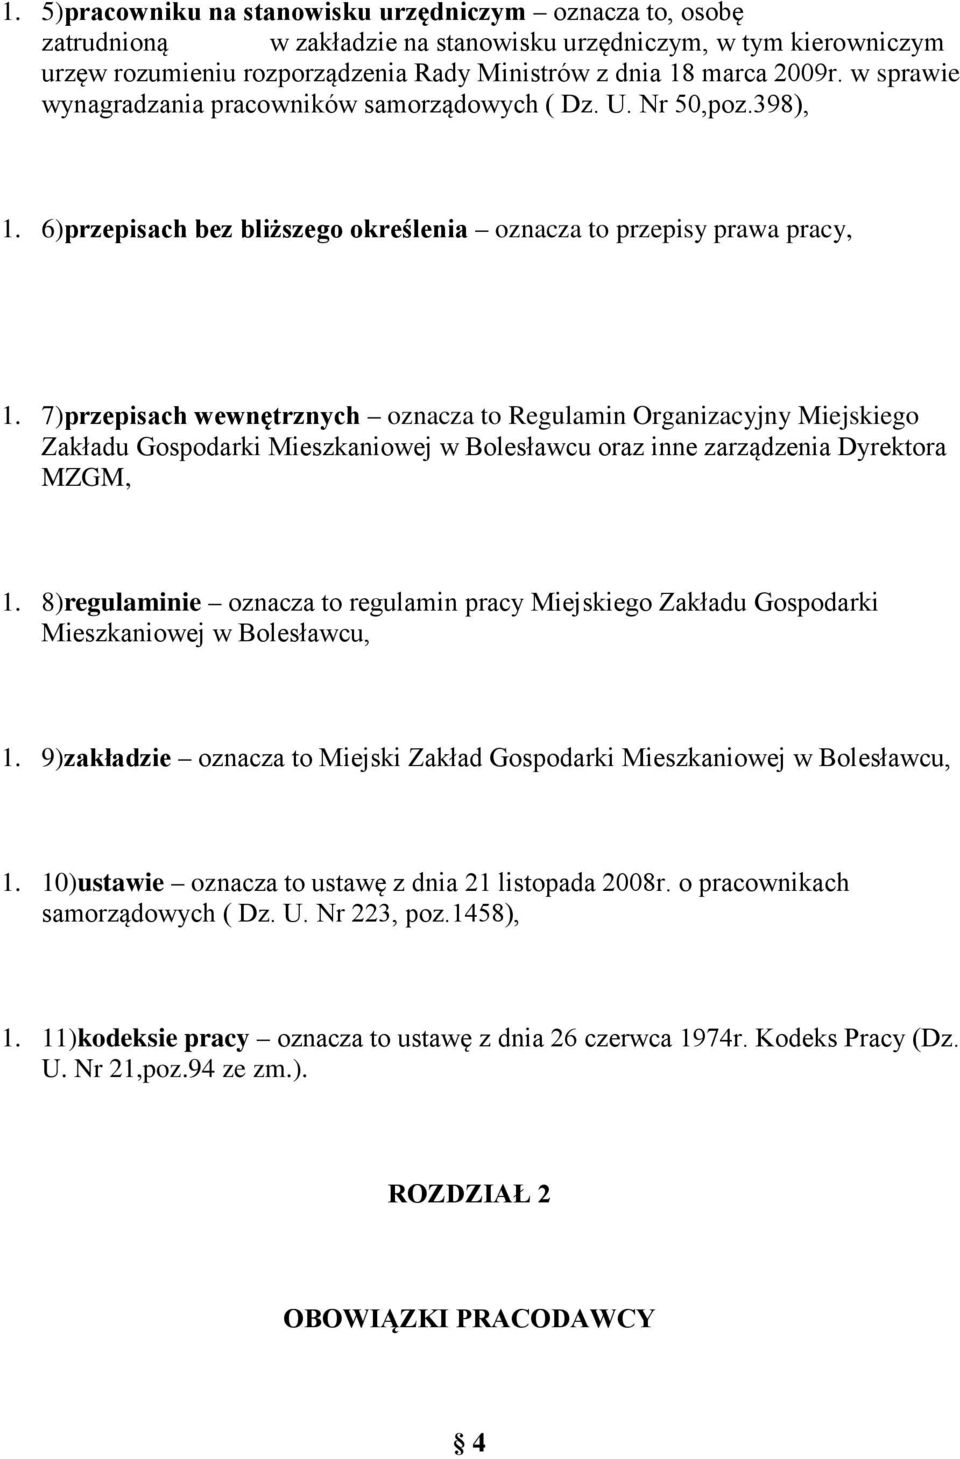 7)przepisach wewnętrznych oznacza to Regulamin Organizacyjny Miejskiego Zakładu Gospodarki Mieszkaniowej w Bolesławcu oraz inne zarządzenia Dyrektora MZGM, 1.